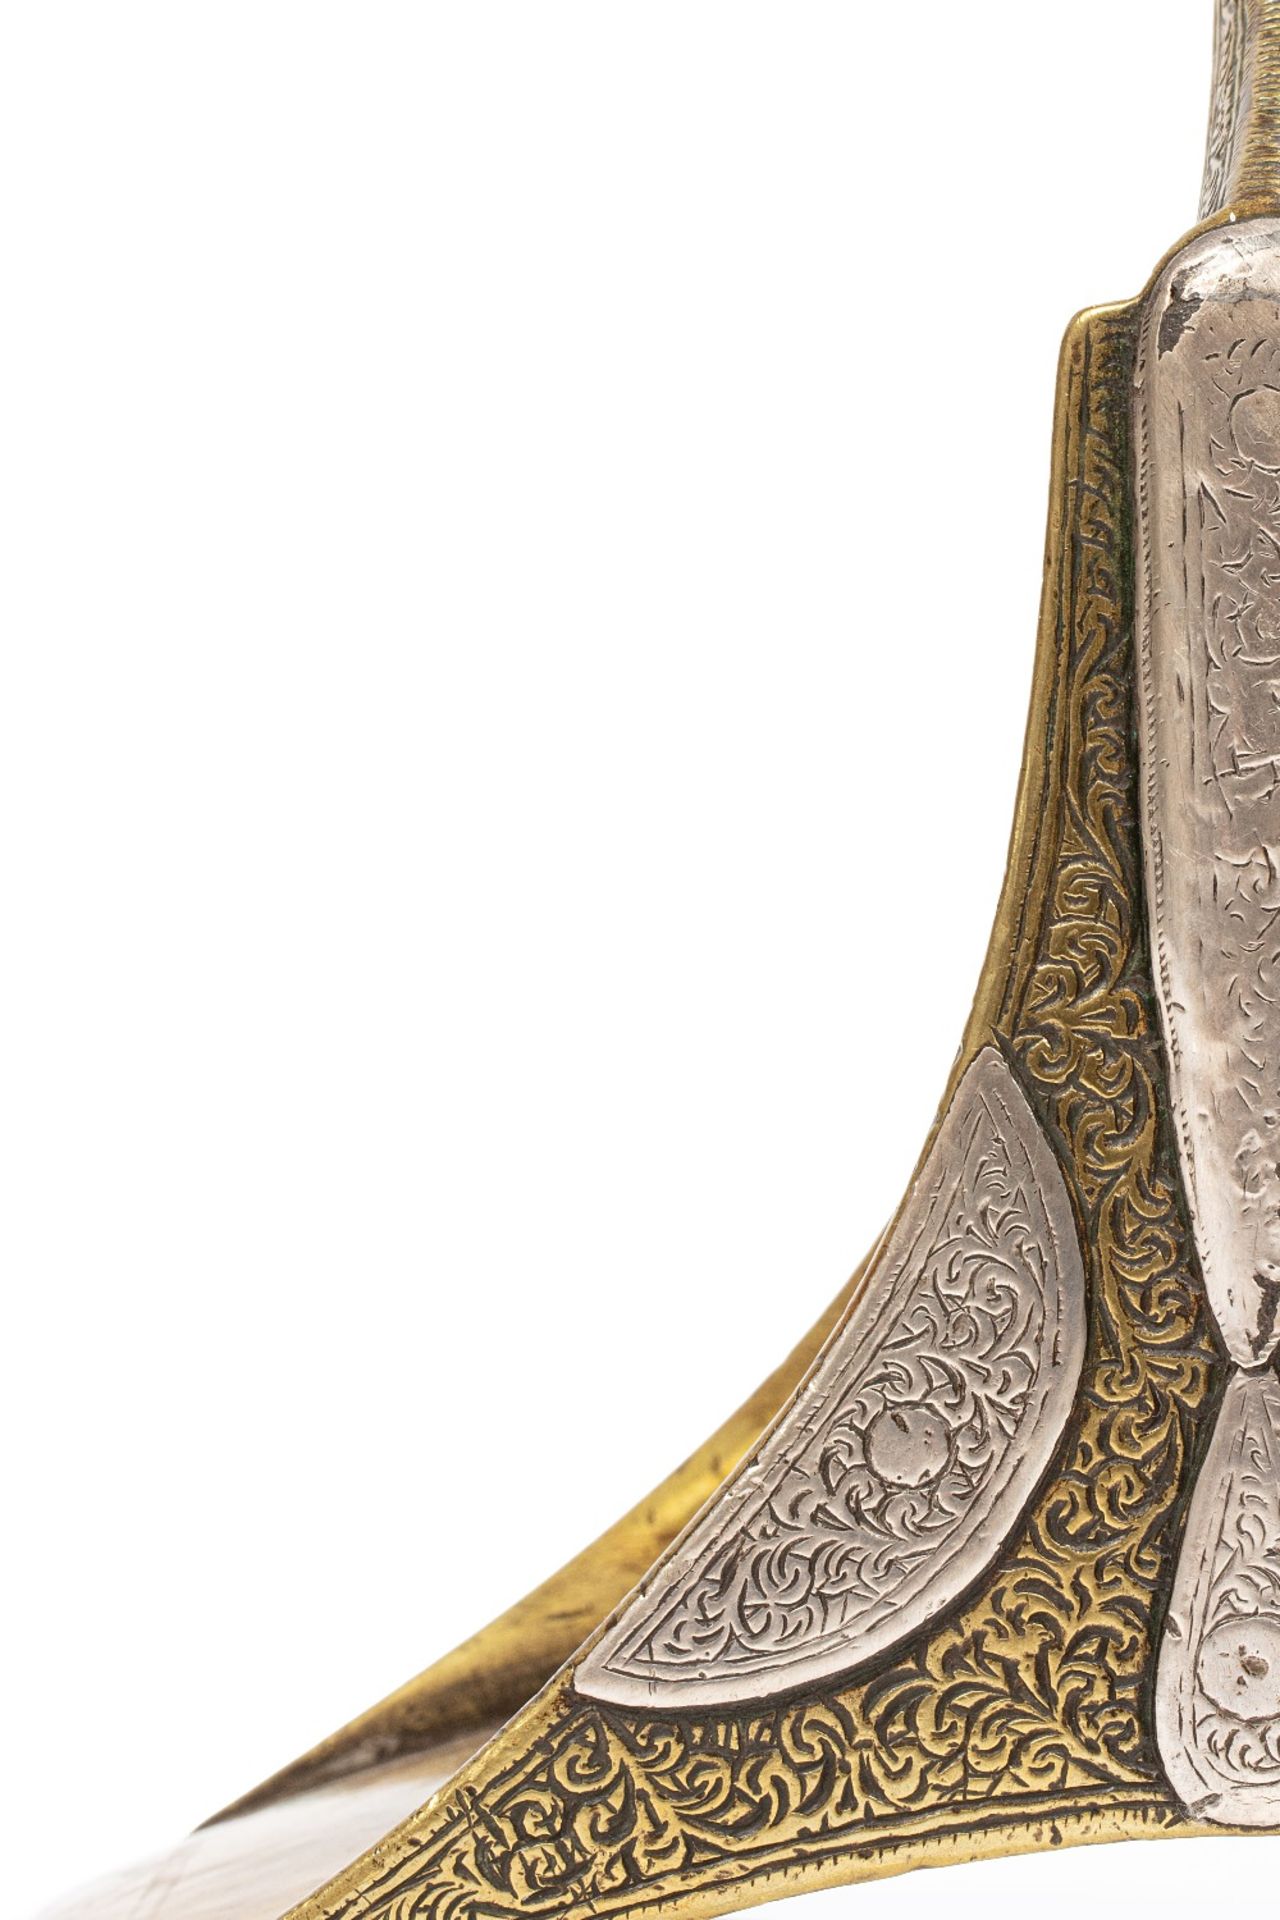 Paire d'étriersMaroc, XIXe siècleEn cuivre jaune ciselé, rehaussé de plaques d'argent gravées à - Bild 2 aus 2